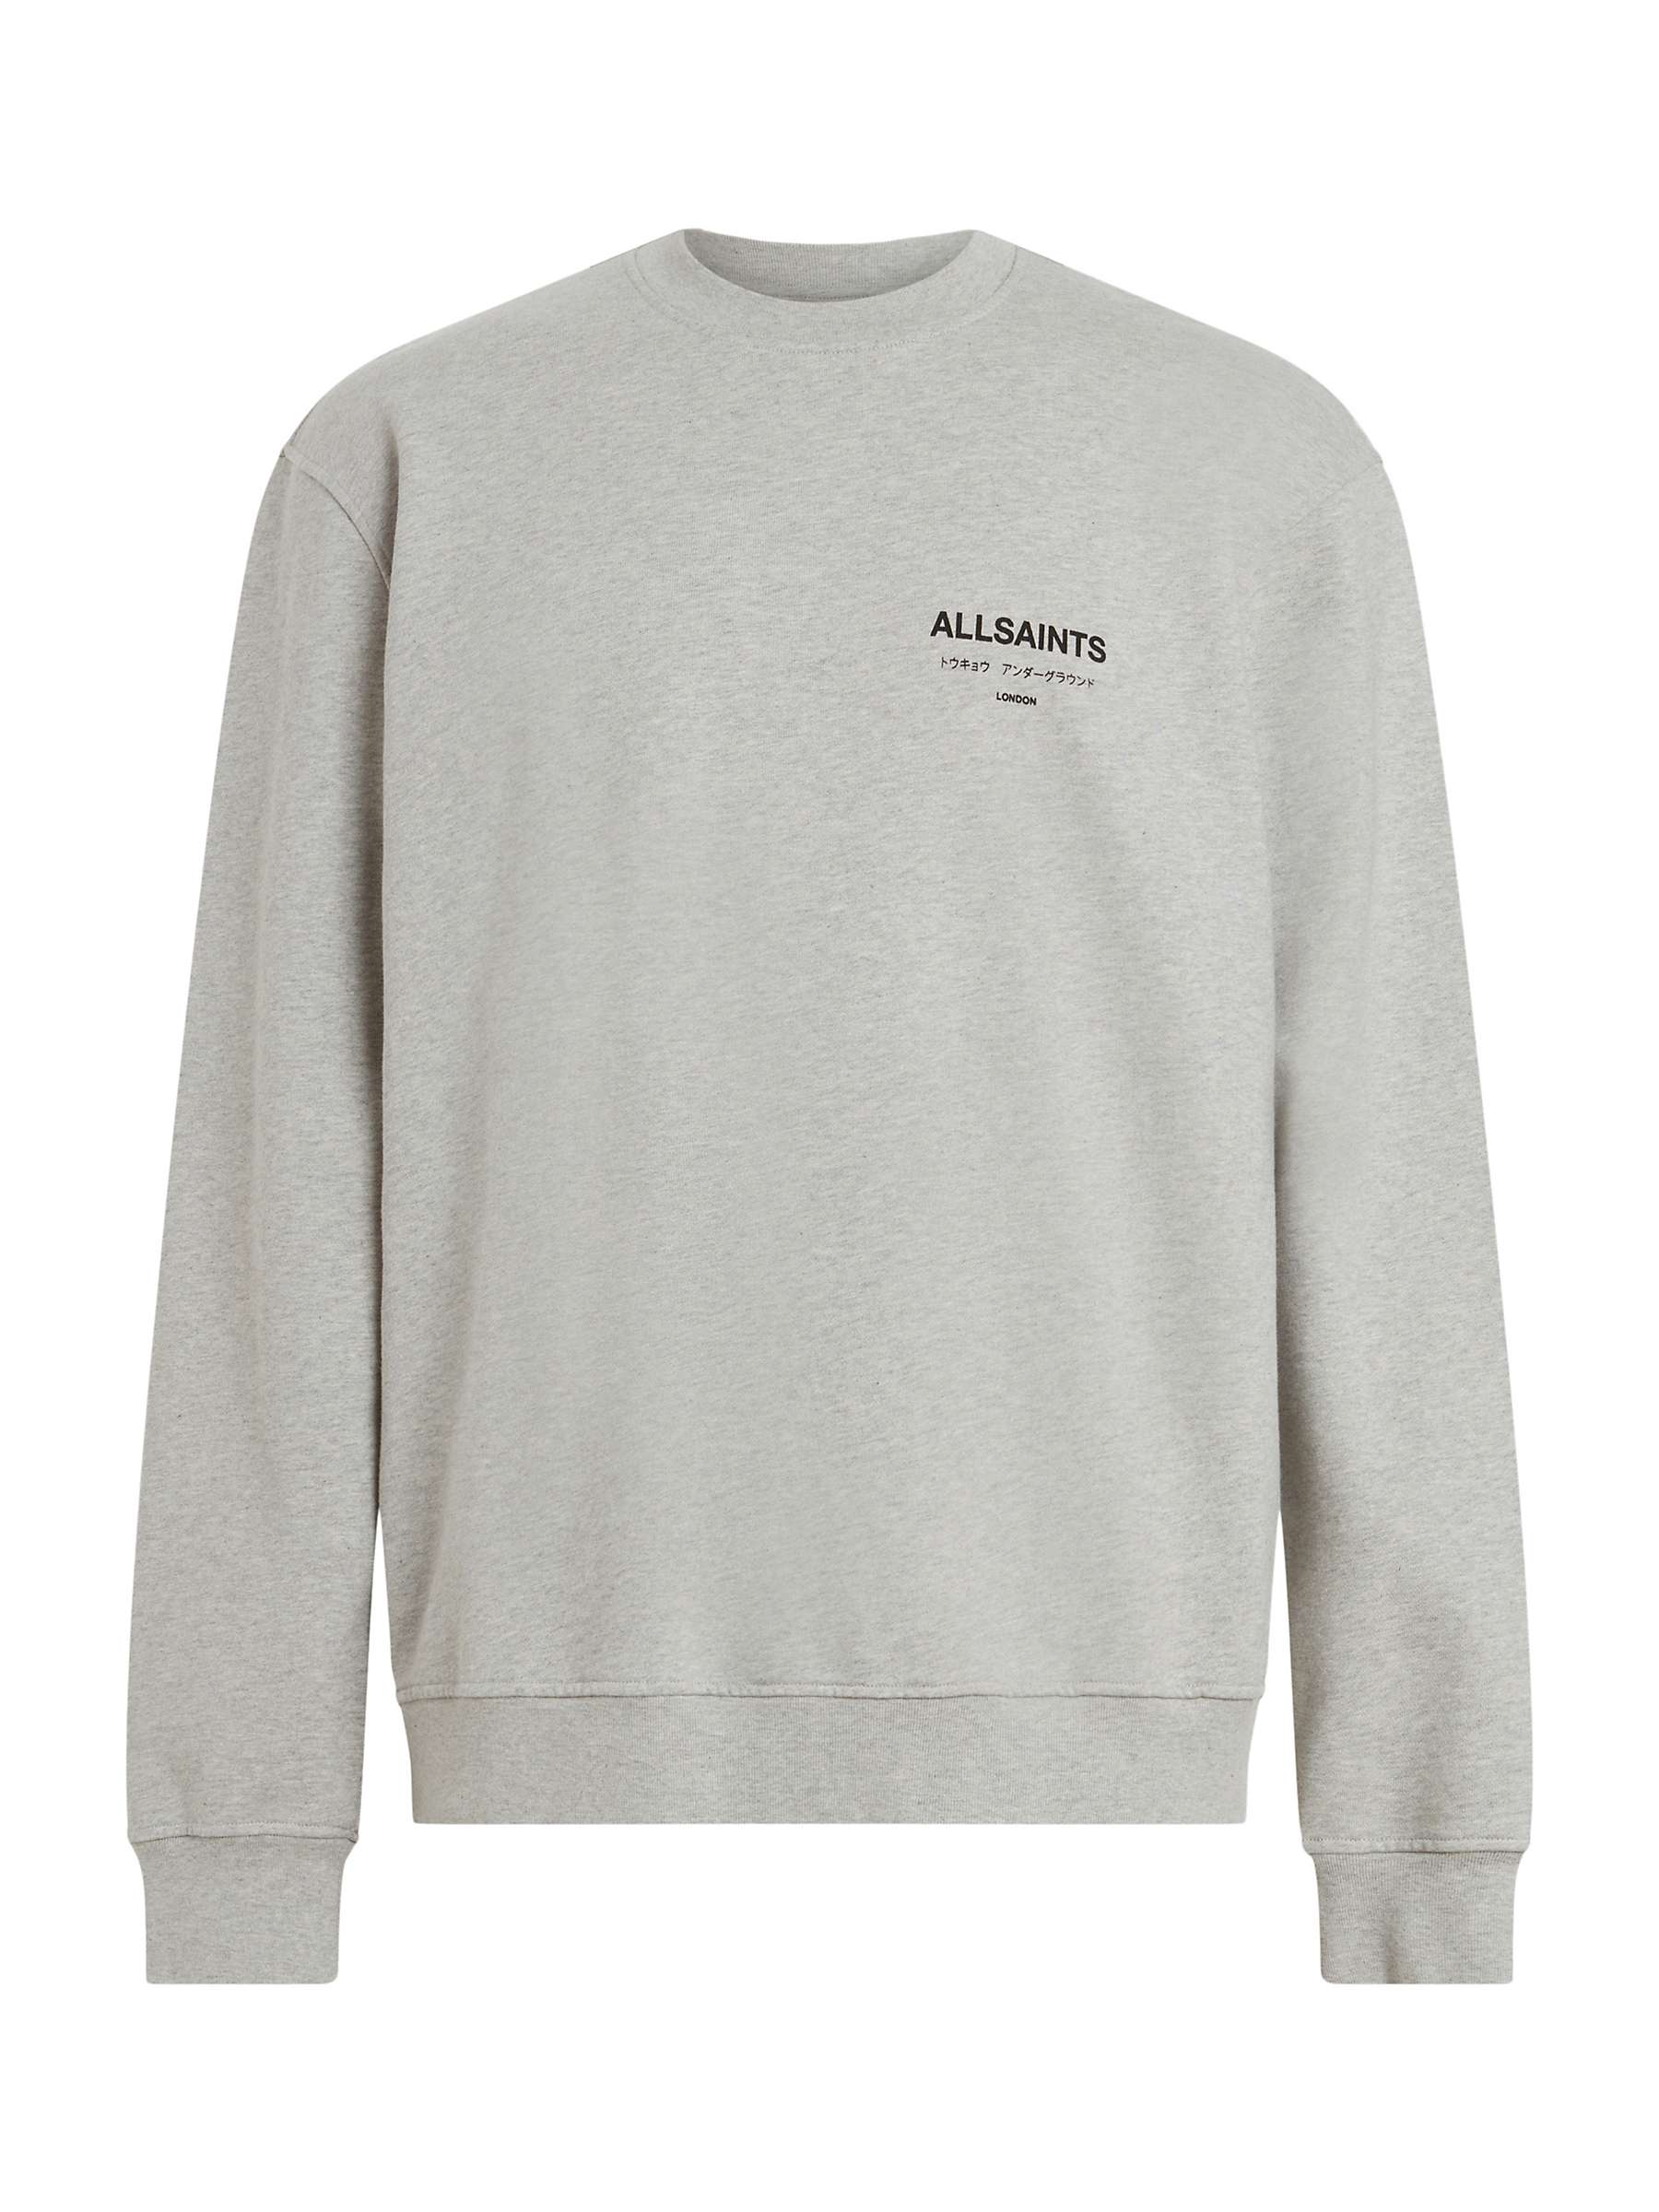 Buy AllSaints Underground Crew Neck Sweatshirt, Grey Marl Online at johnlewis.com